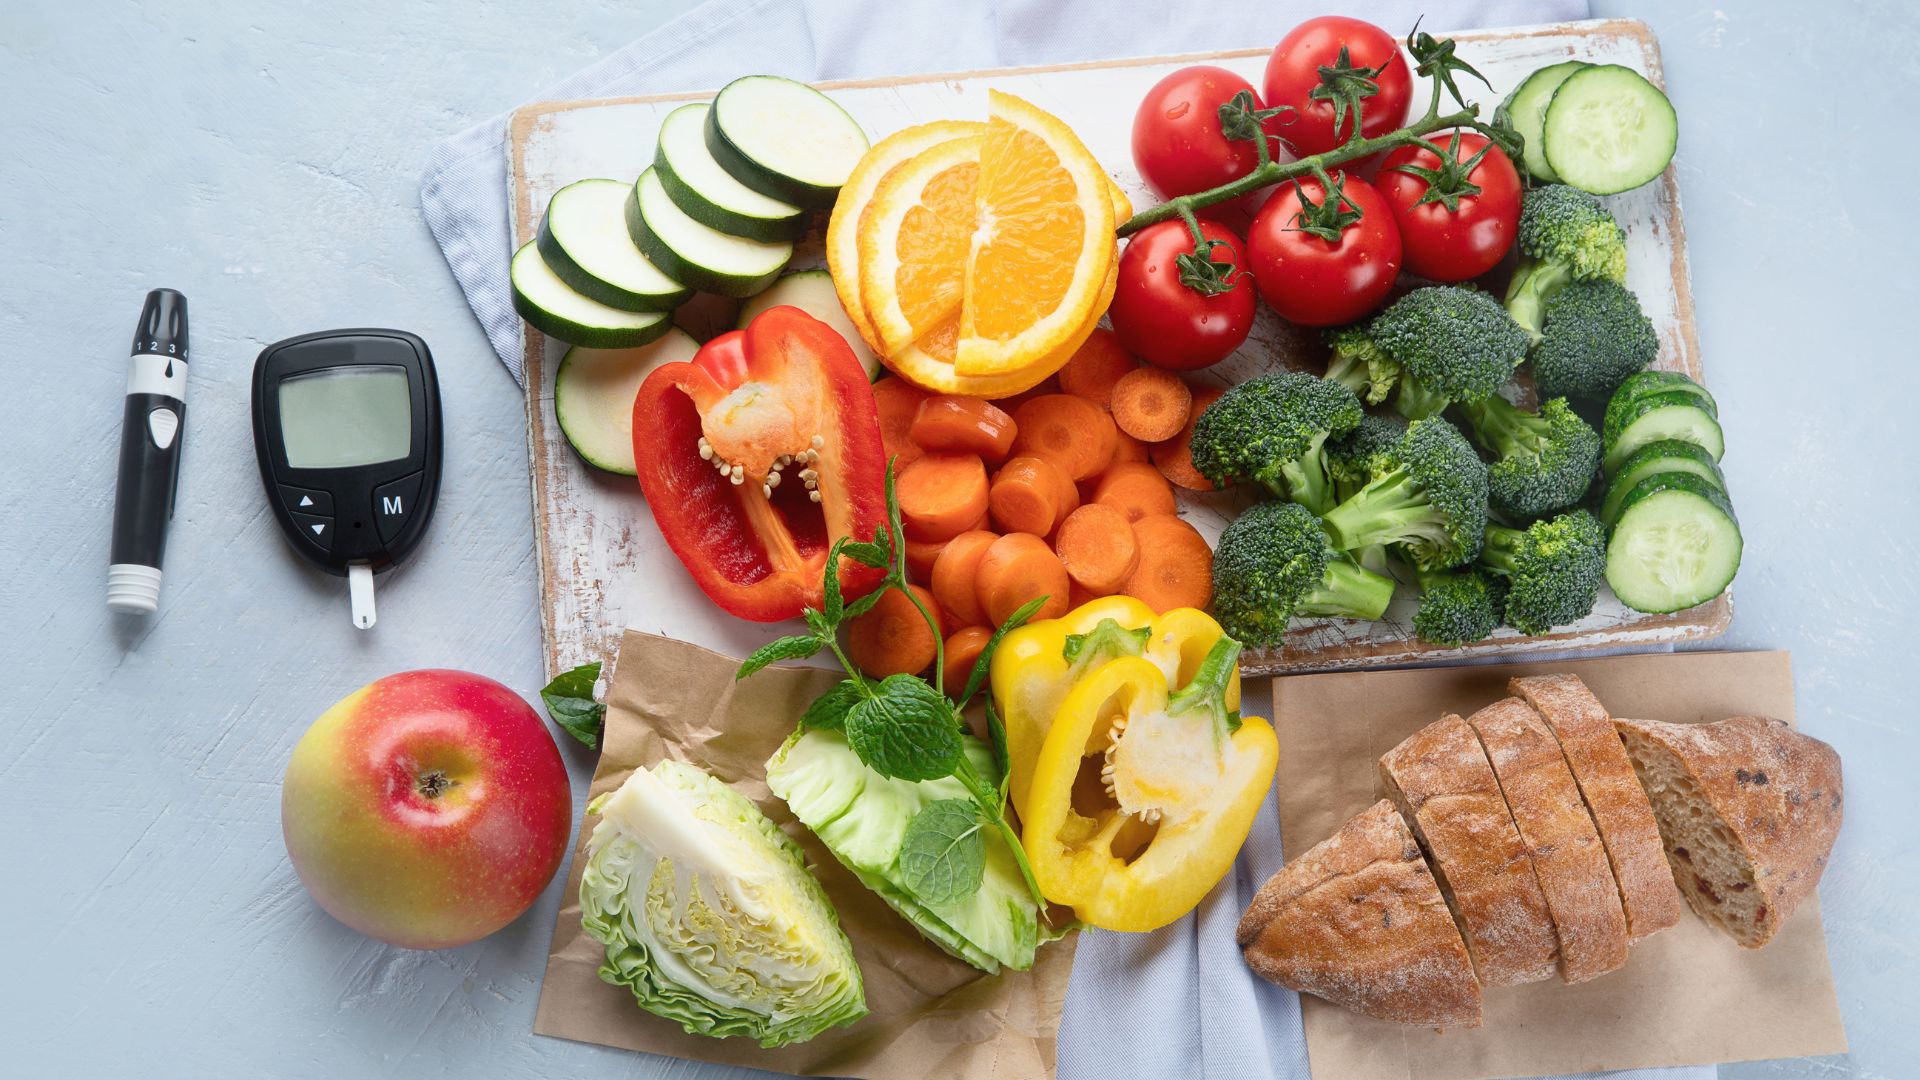 Ein Blutzuckermessgerät für Diabetiker liegt neben einem Brett, auf dem gesunde Lebensmittel wie Gemüse und Obst liegen.